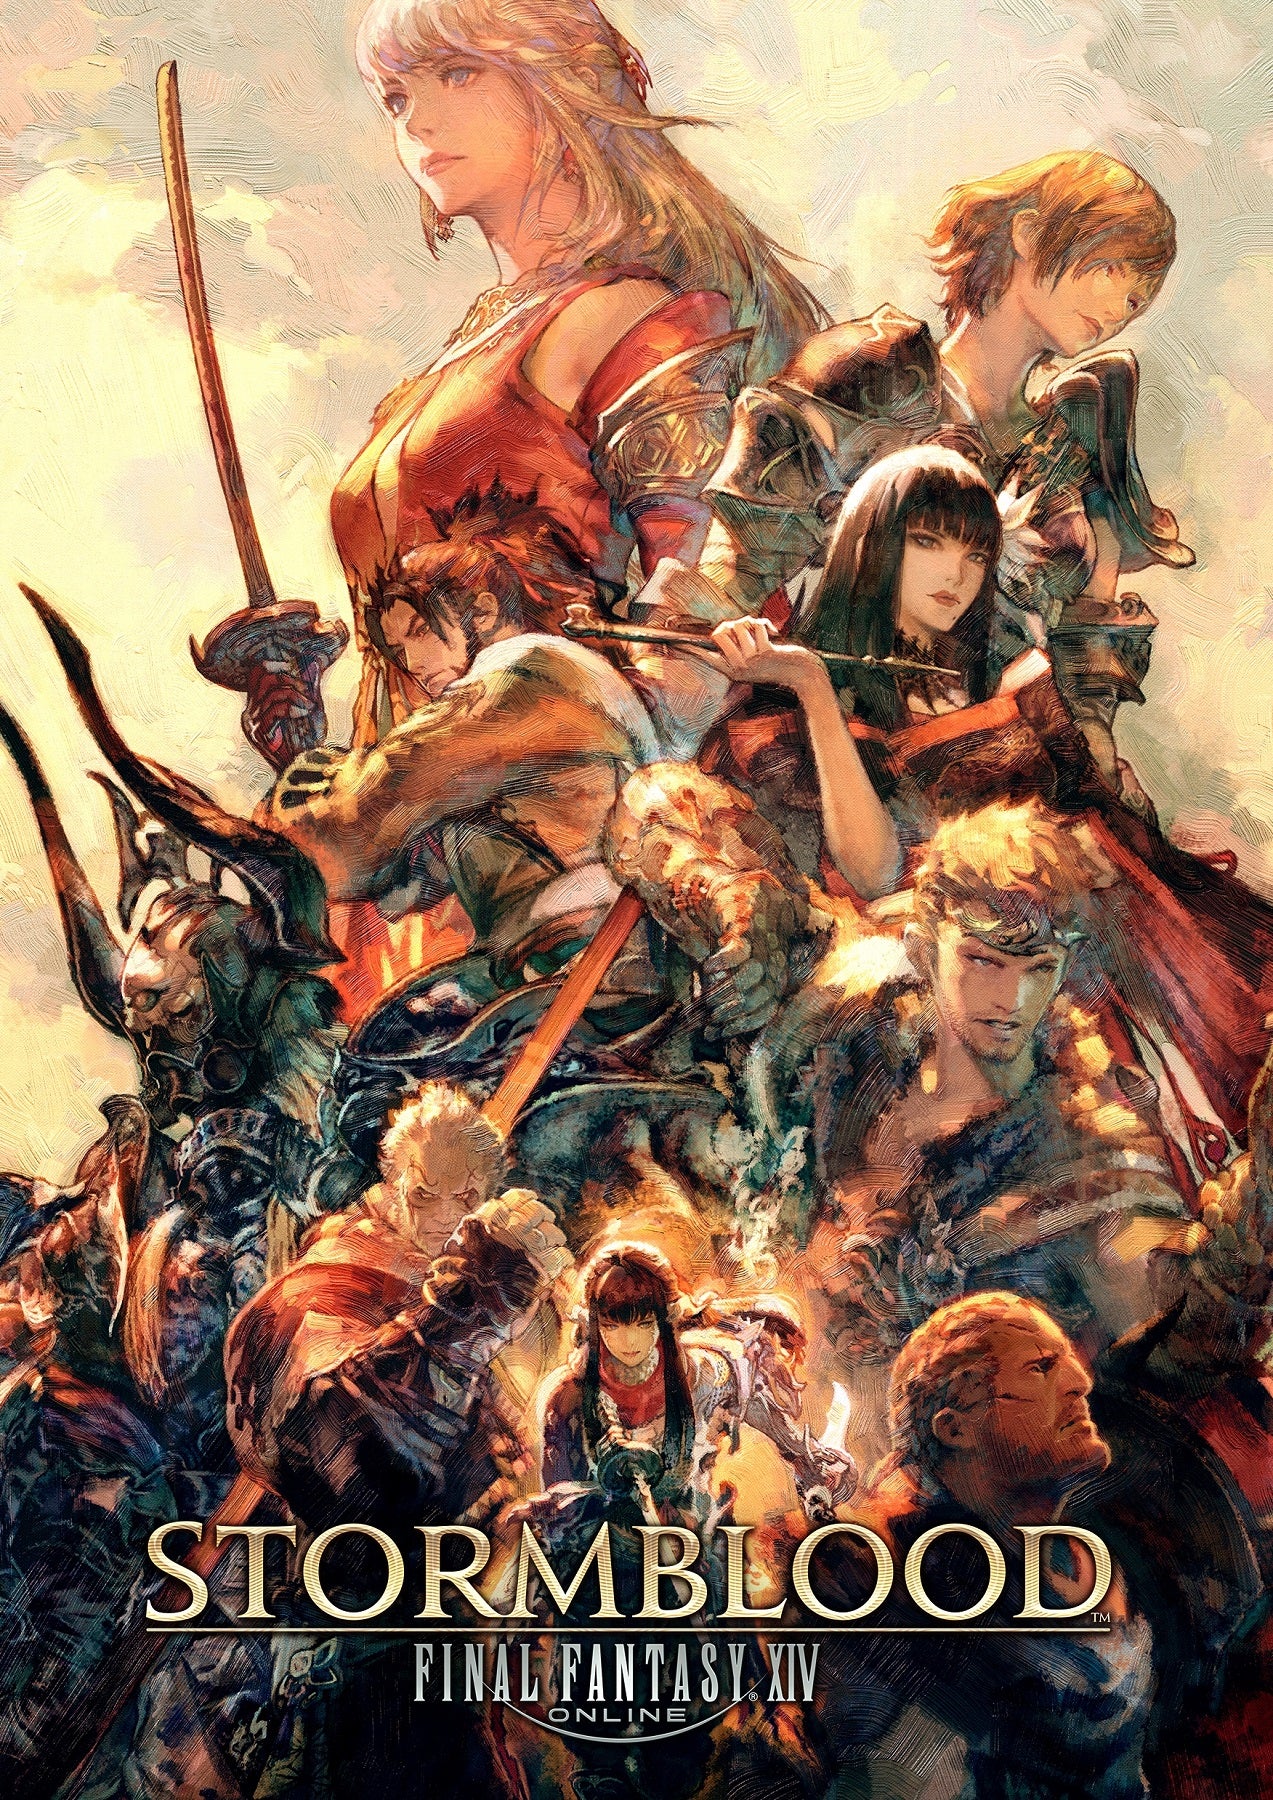 Final Fantasy XIV: Stormblood Poster - GameMerch Posters